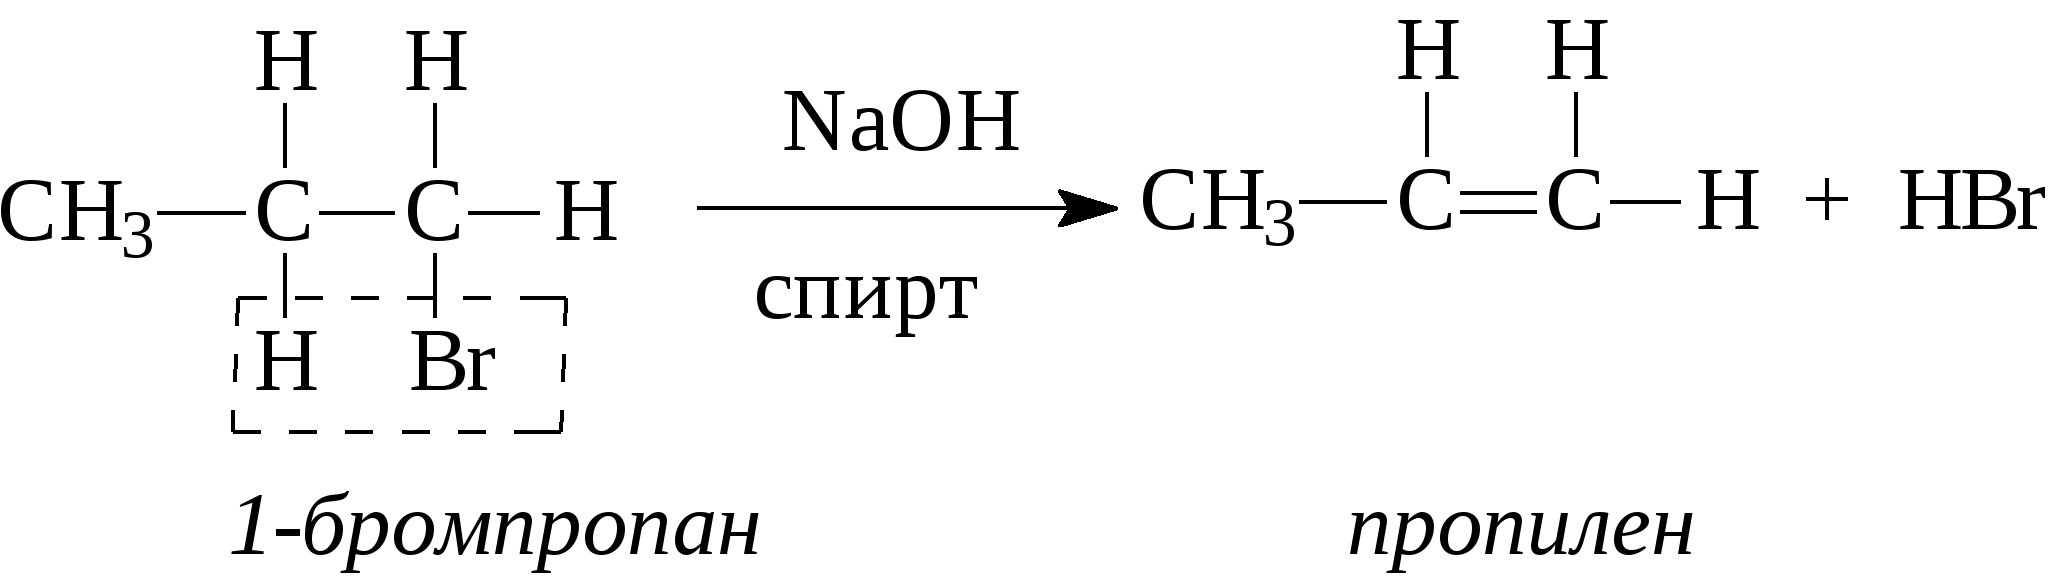 Бромпропан NAOH спиртовой. Получение этилена из этанола. Получение этилена из этилового спирта. Из этилена в этанол.